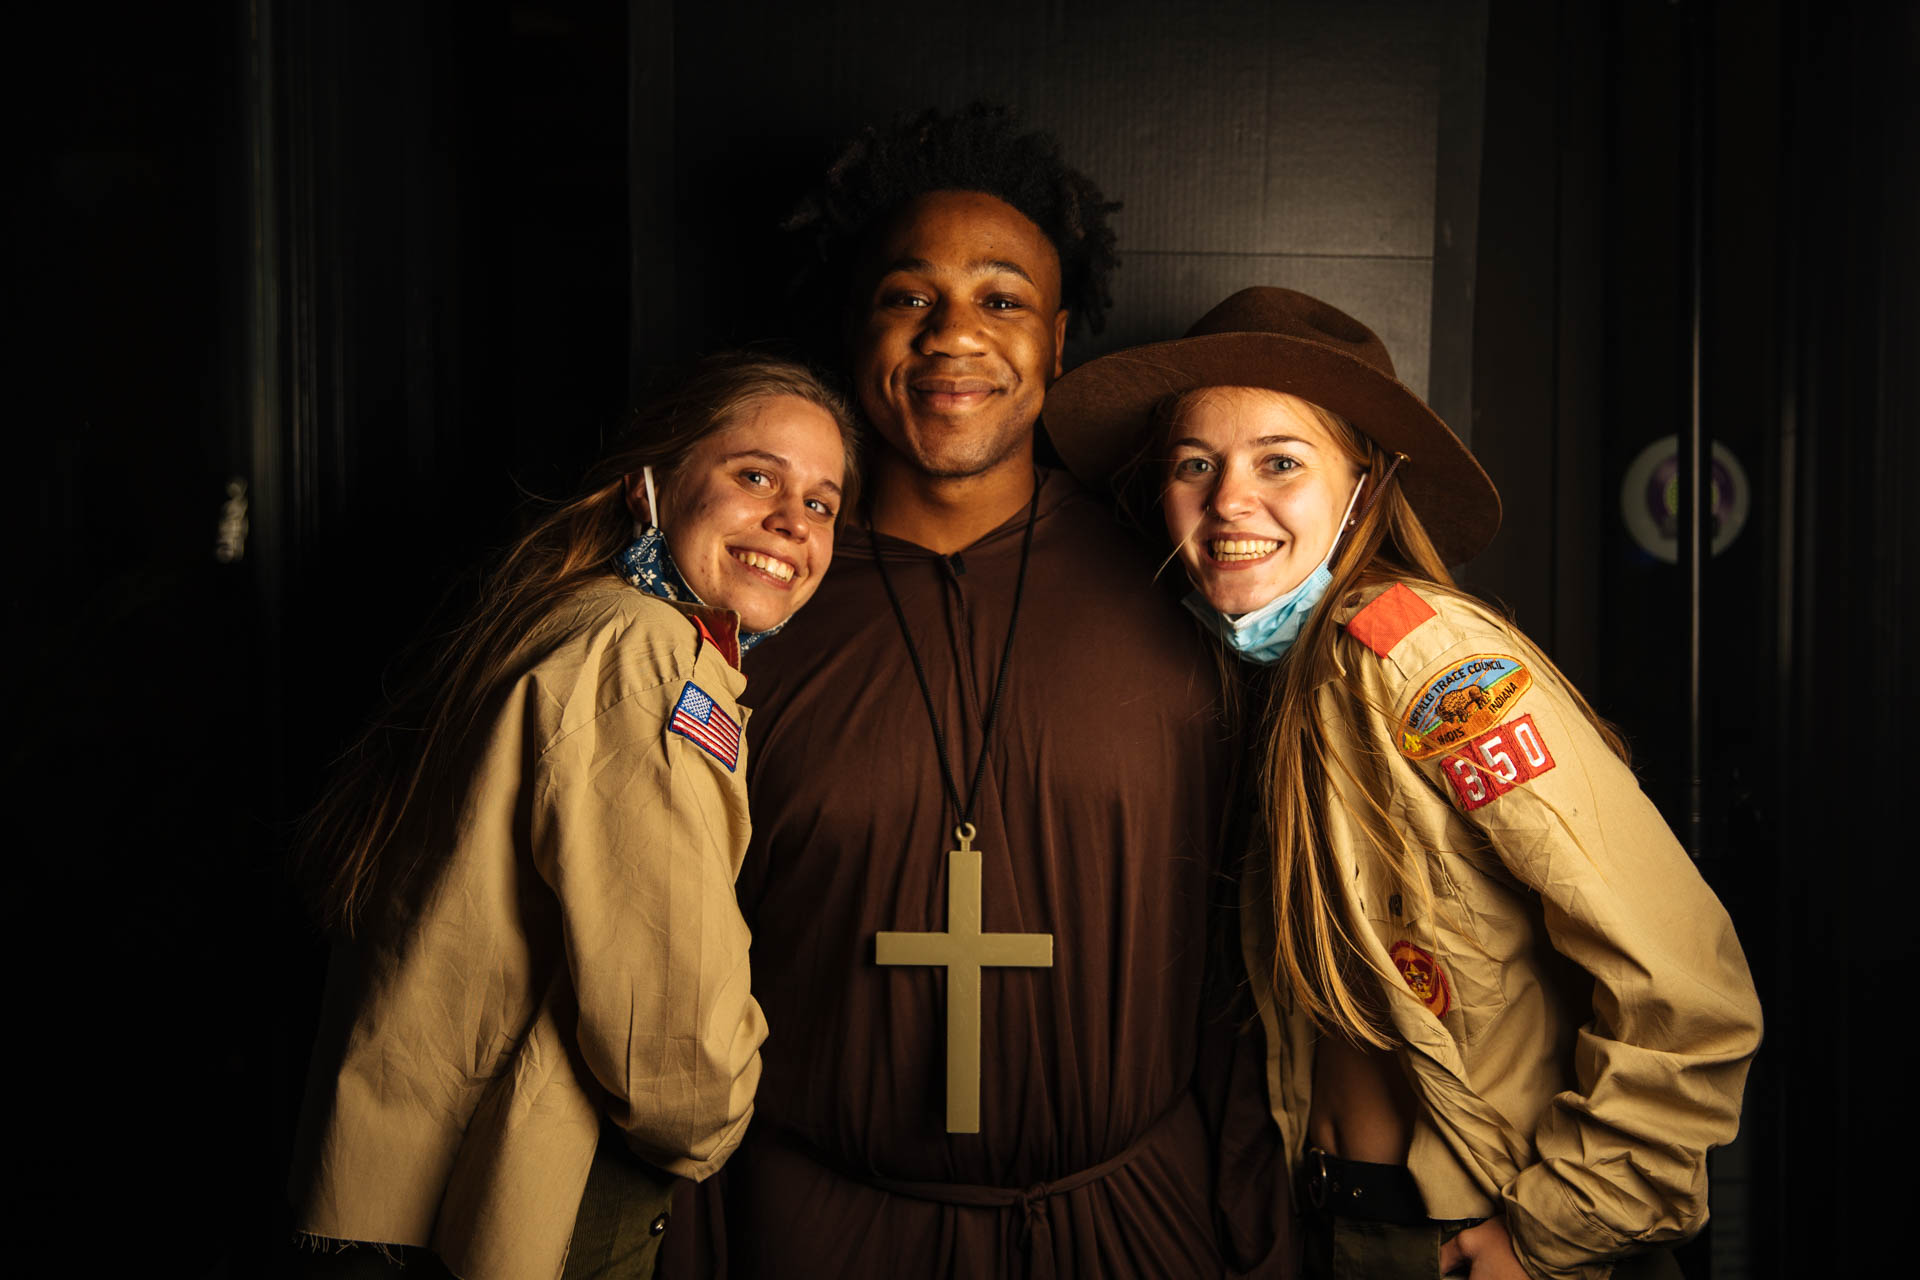 halloween-female-boy-scouts-priest-costume-travis-dewitz-7364.JPG